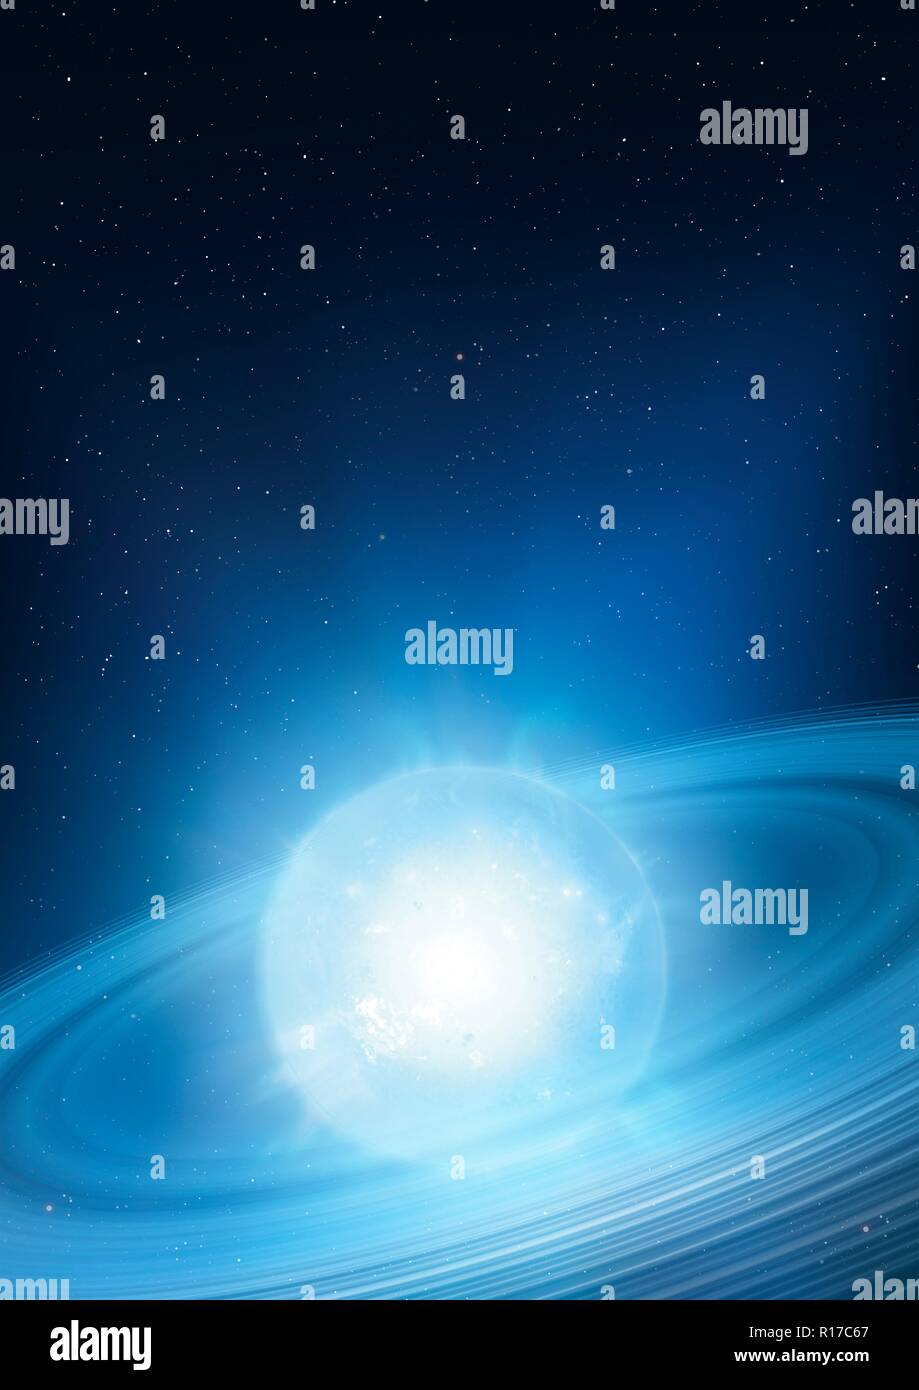 Ilustración de la estrella gigante azul HD 37974, en la Gran Nube de Magallanes. Los astrónomos sospechan que está rodeada por un disco de polvo, que se extiende a lo largo de 60 veces la distancia de la órbita de Plutón desde el Sol (unas 3.000 unidades astronómicas, o AU). El disco podría ser un vestigio de formación planetaria, o el comienzo del proceso de creación del planeta. Foto de stock